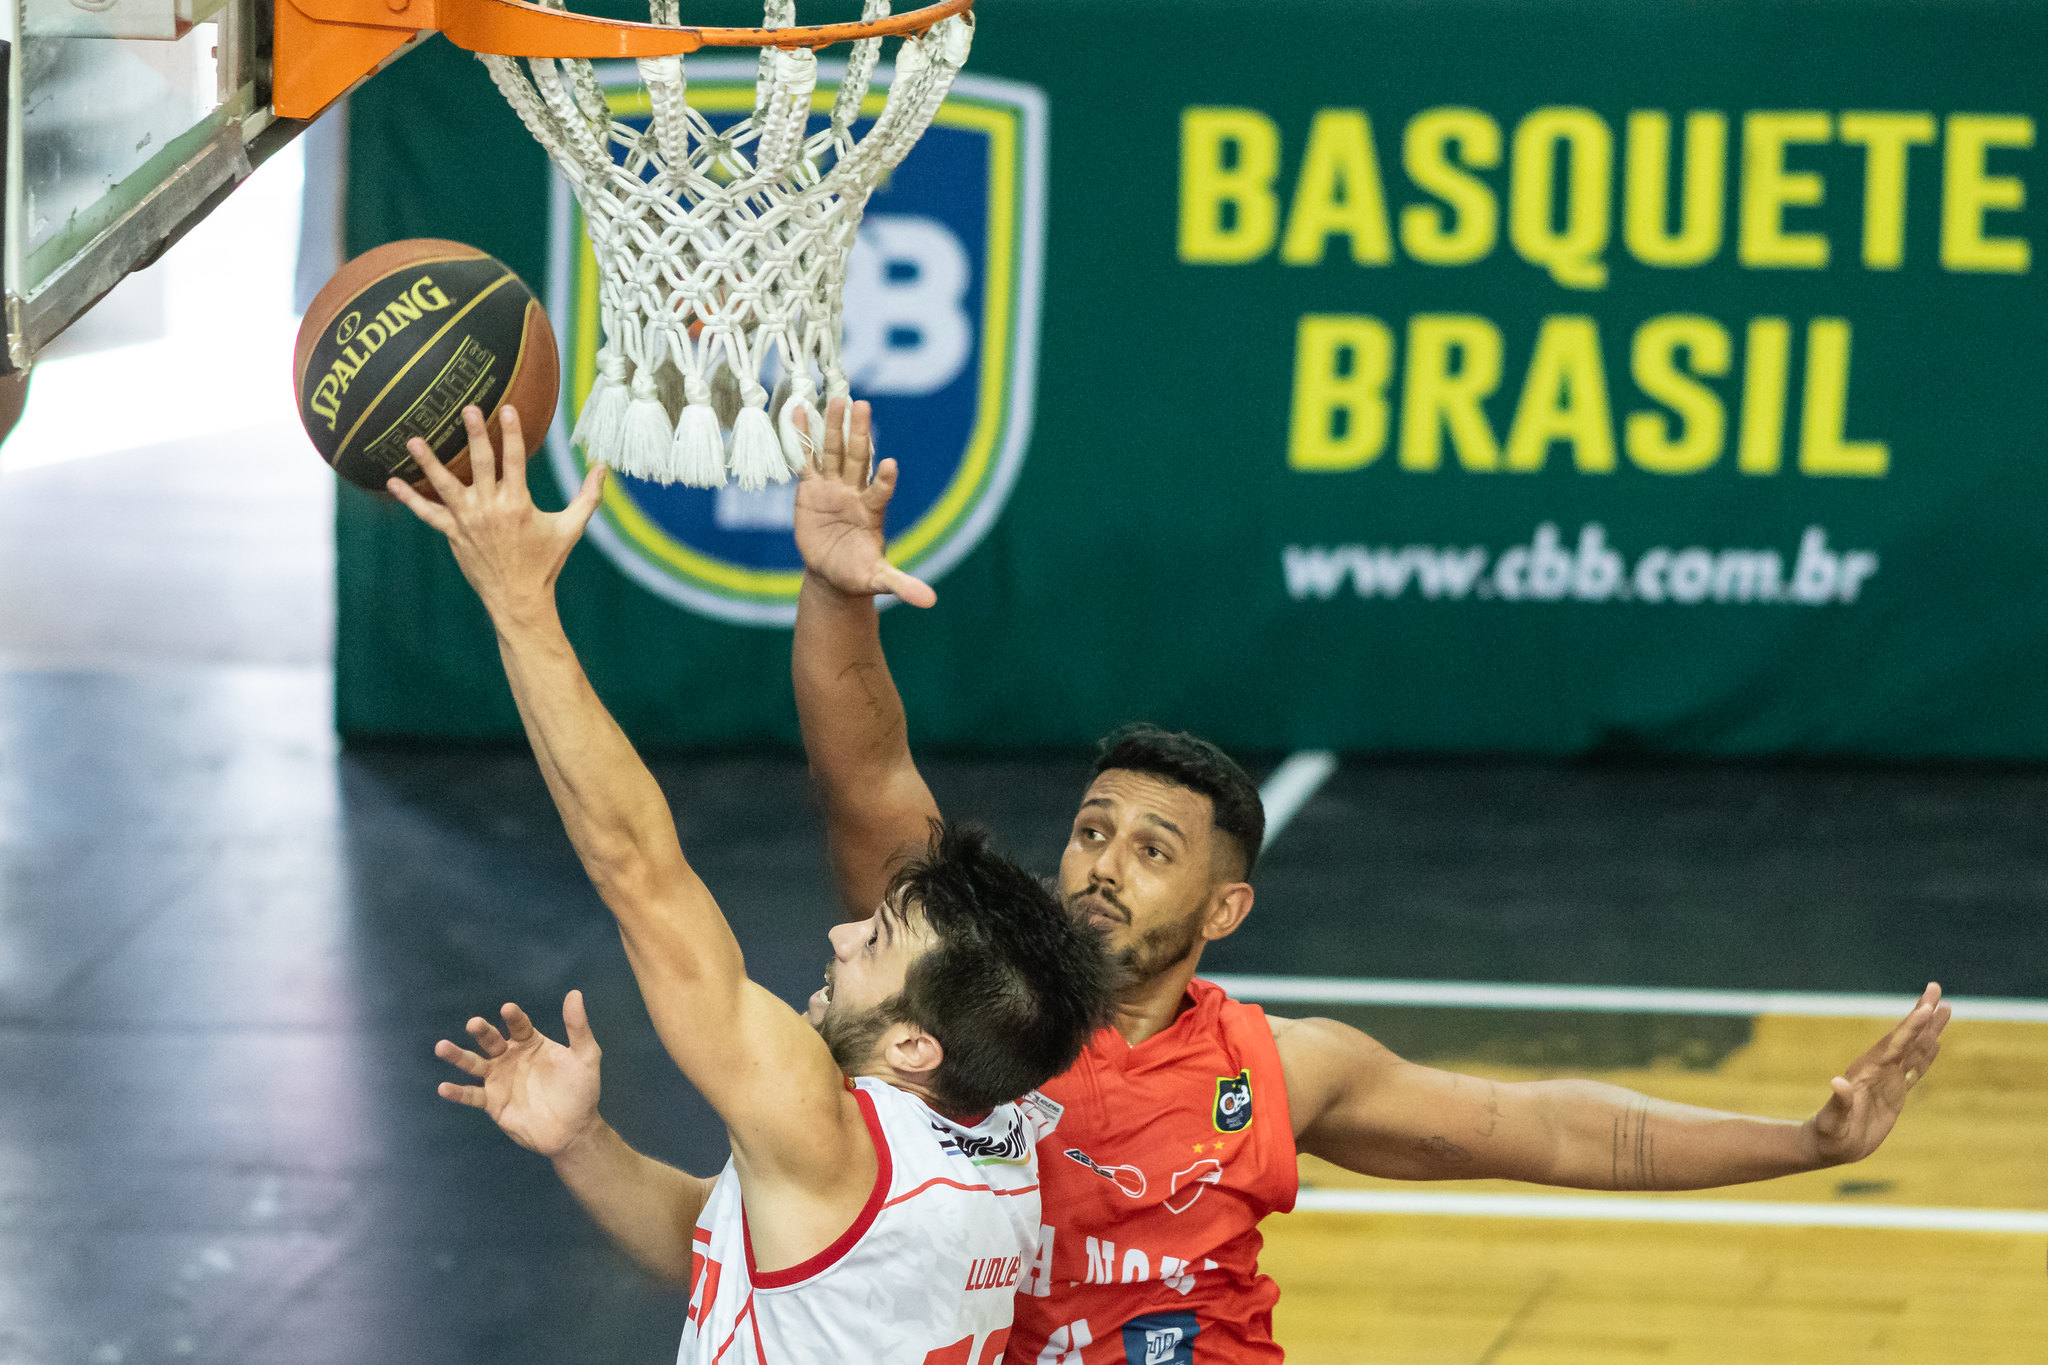 CBB divulga novo modelo de disputa do Brasileirão de Basquete, basquete